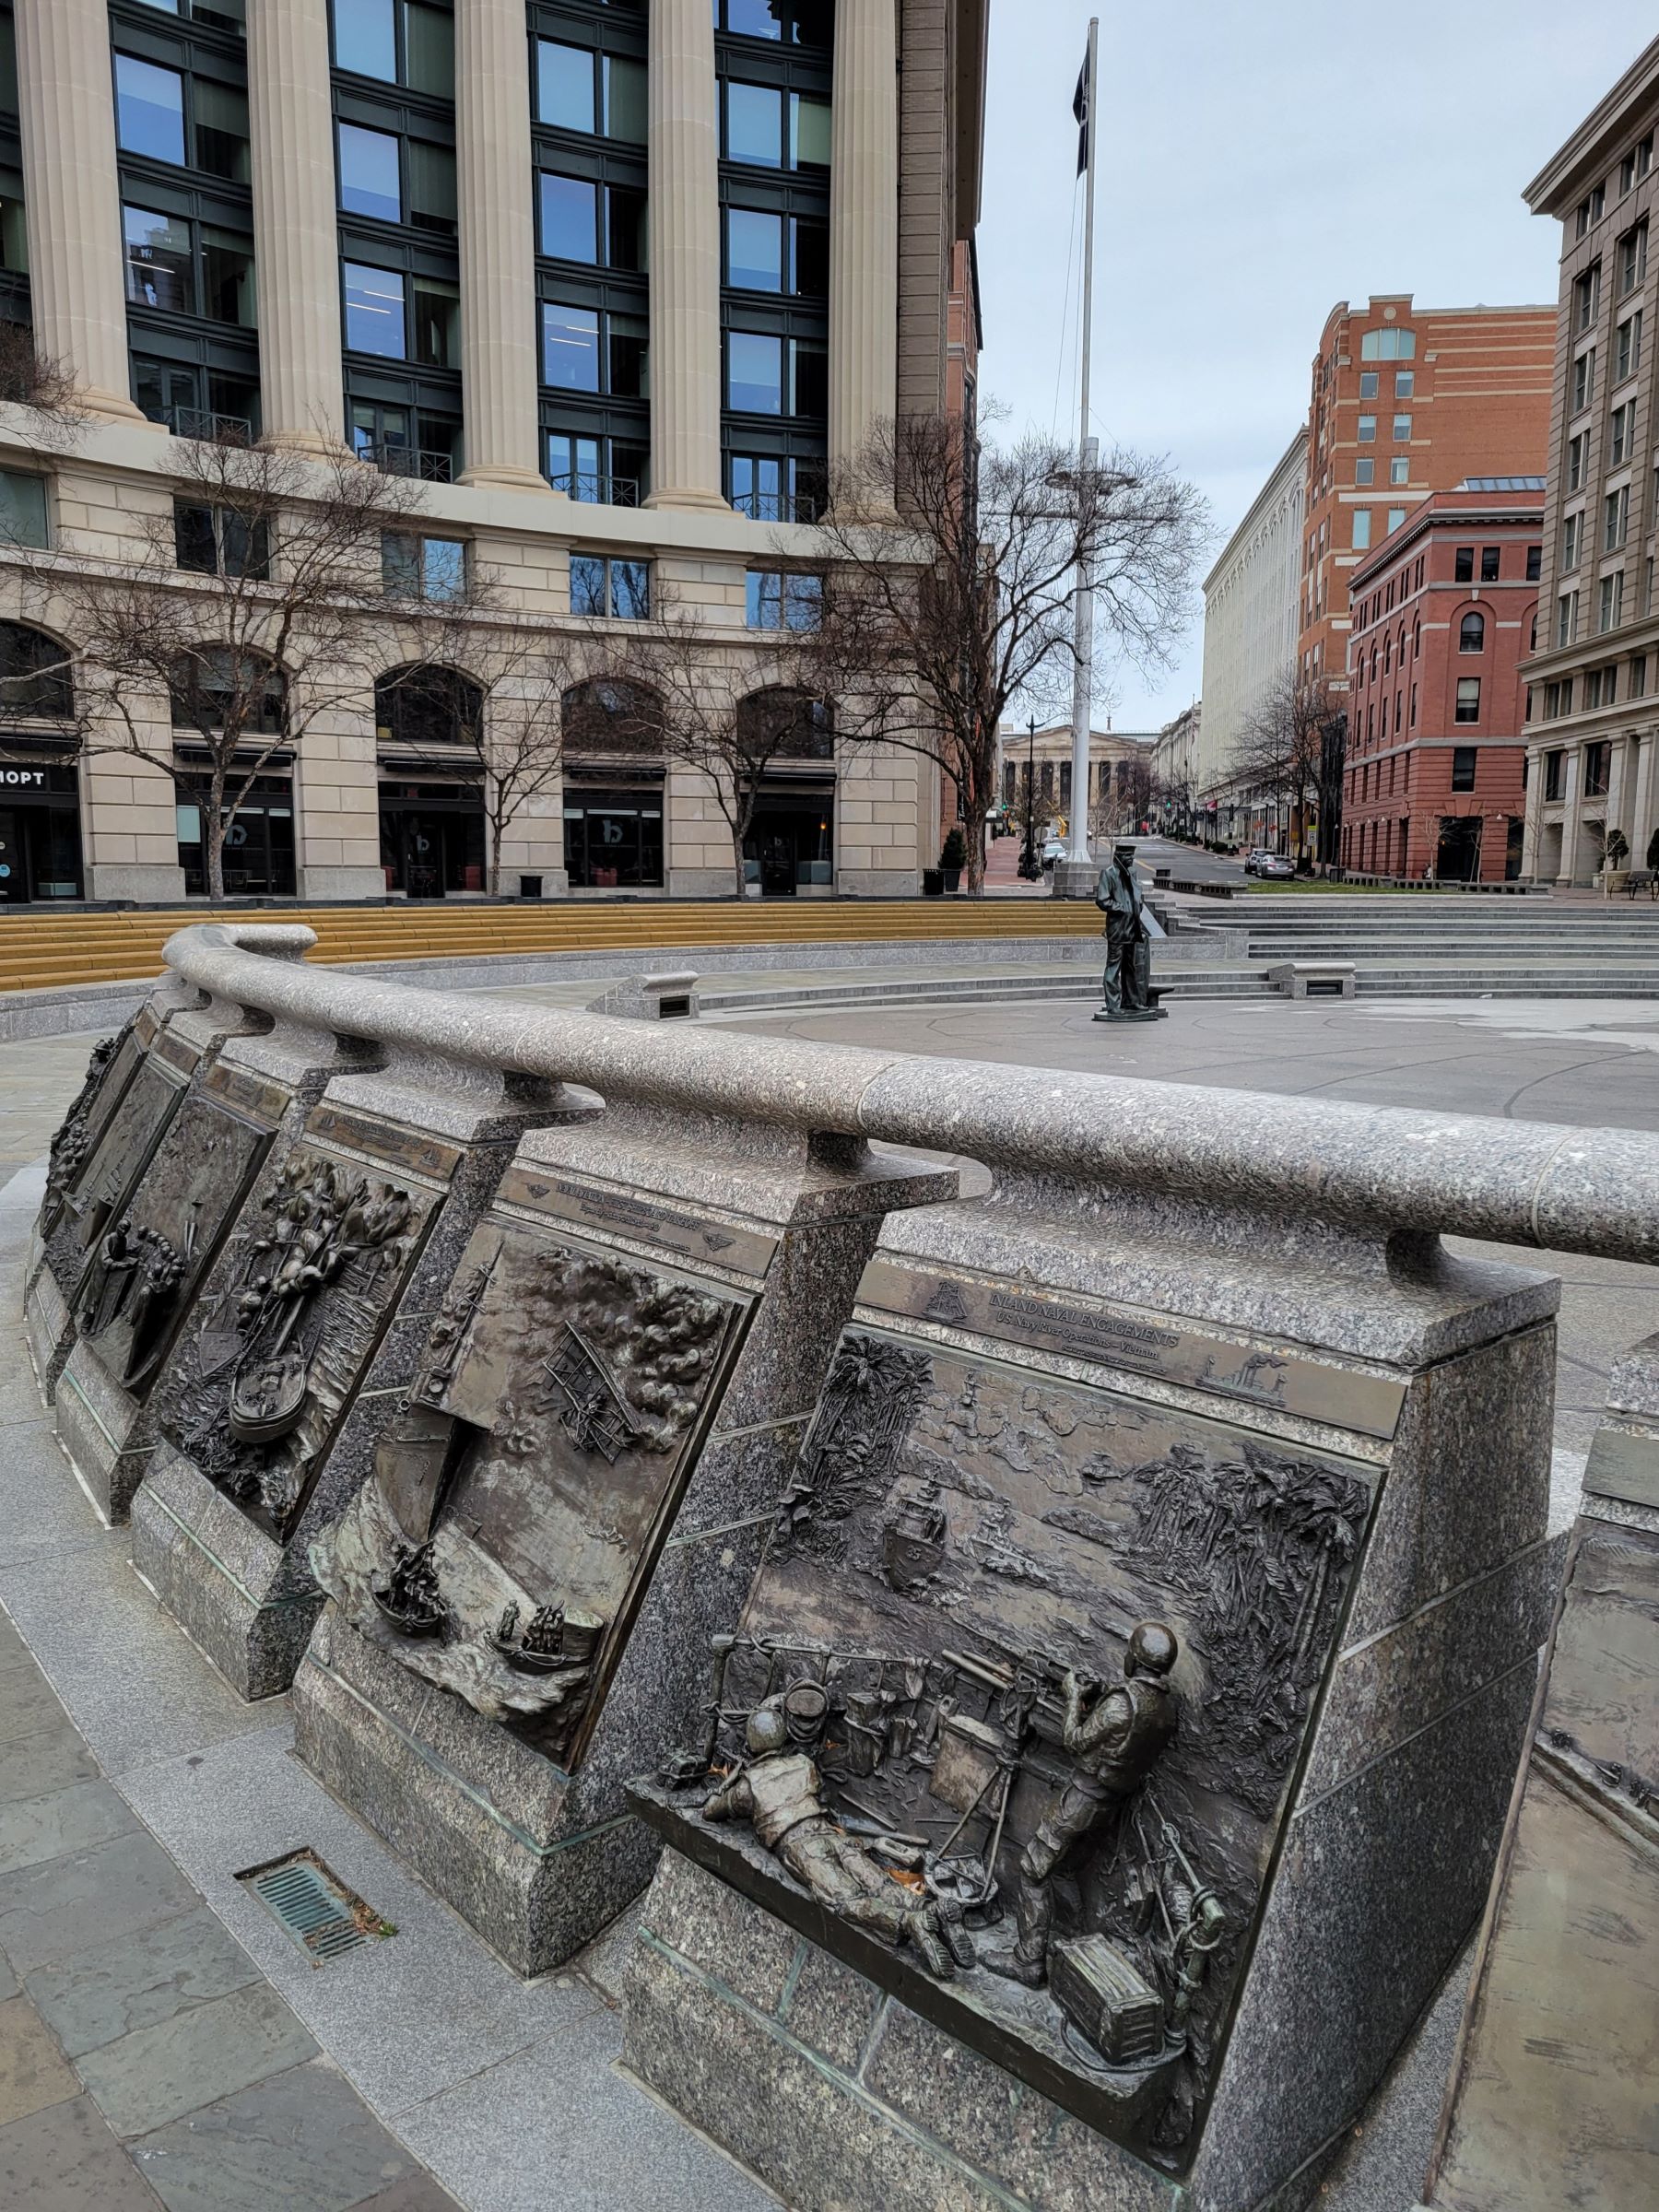 펜쿼터(Penn Quarter)의 동상들과 해군 기념물 및 법집행(Law Enforcement) 박물관과 순직자 추모광장